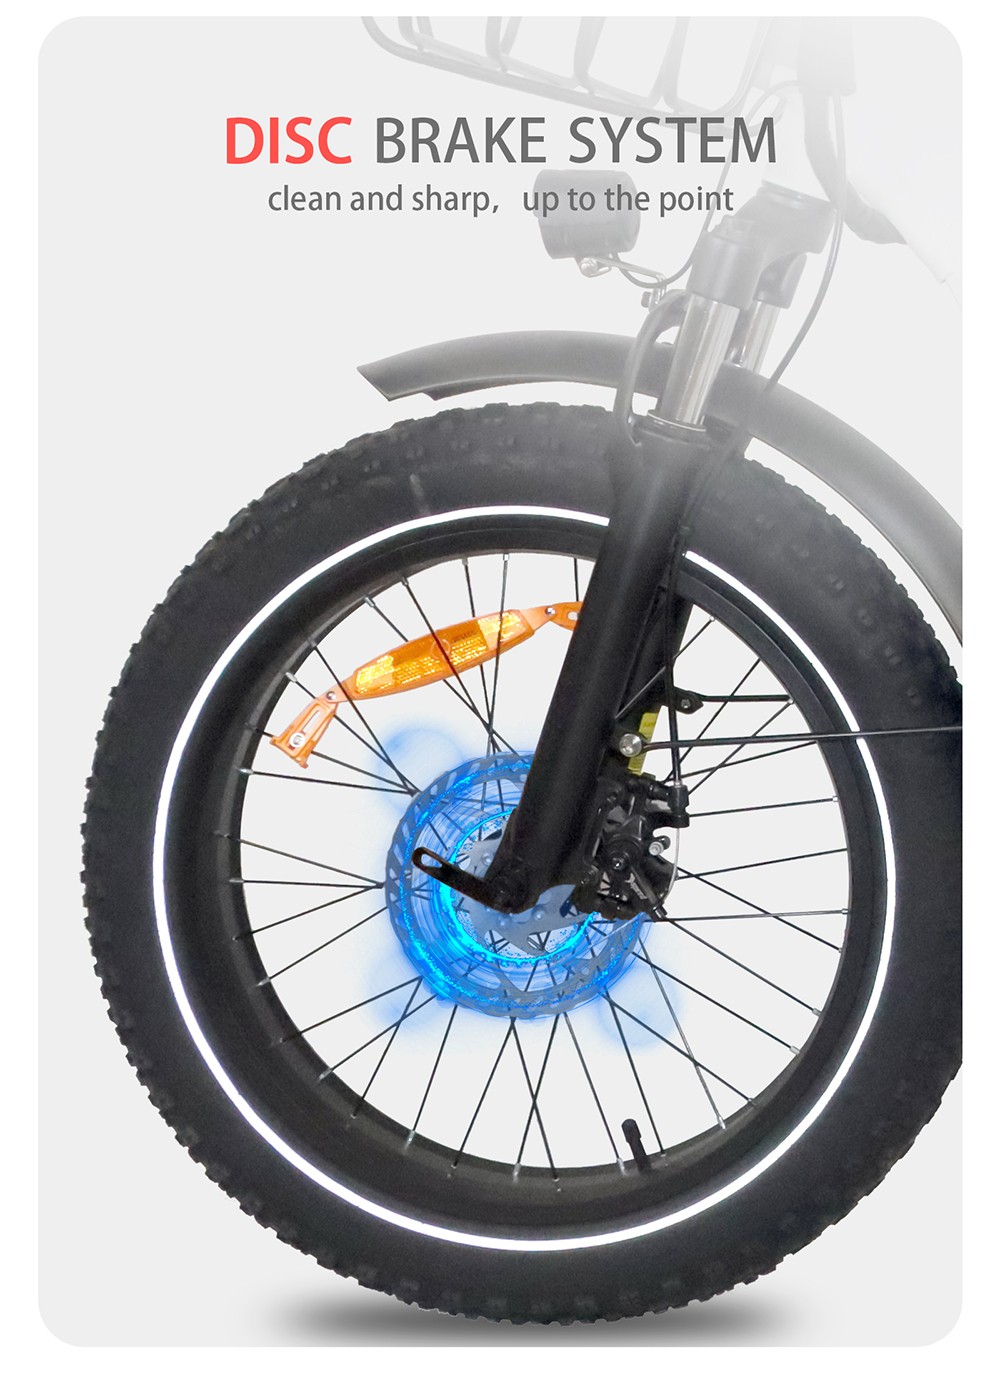 BAOLUJIE DZ2030 elektrische fiets, 20 * 4.0 inch band 500 W motor 48 V 13 Ah verwijderbare batterij 40 km / u Max. snelheid 35-45 km bereik SHIMANO 7 versnellingen - grijs